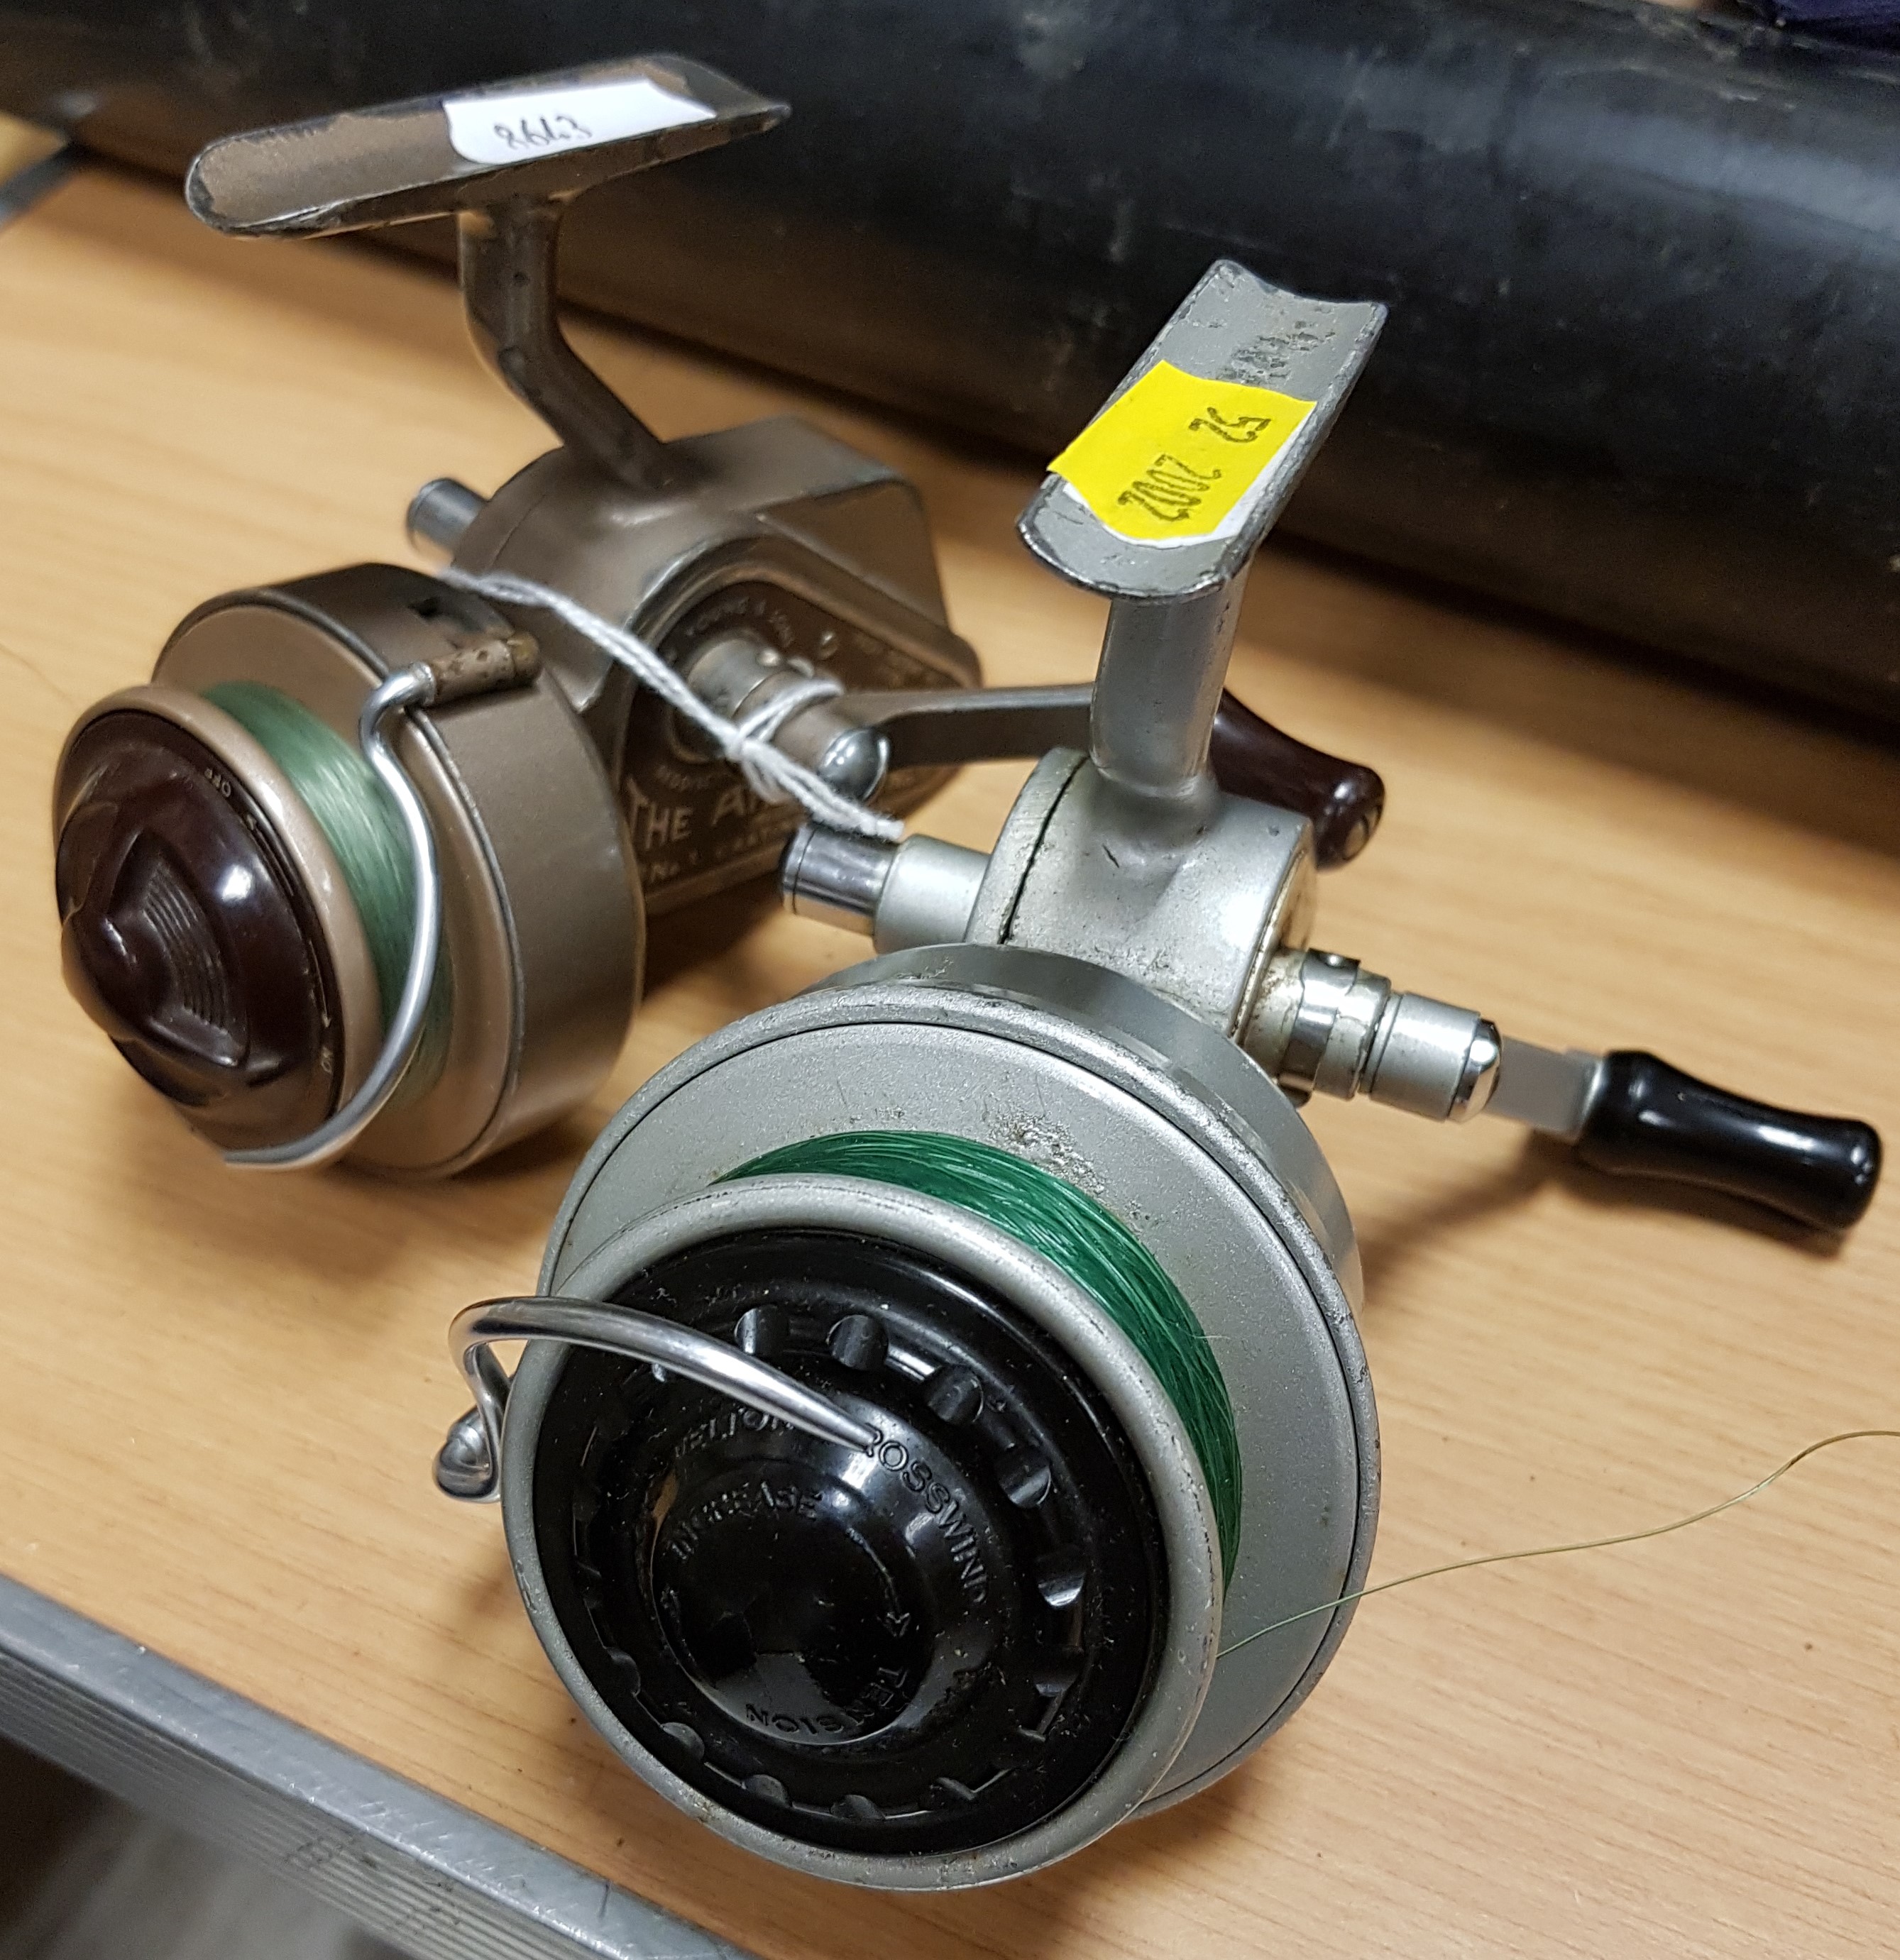 An Allcock "Felton Crosswind" No. 2 fixed spool reel 11.5 cm and an Ambidex No. 1 fixed spool reel